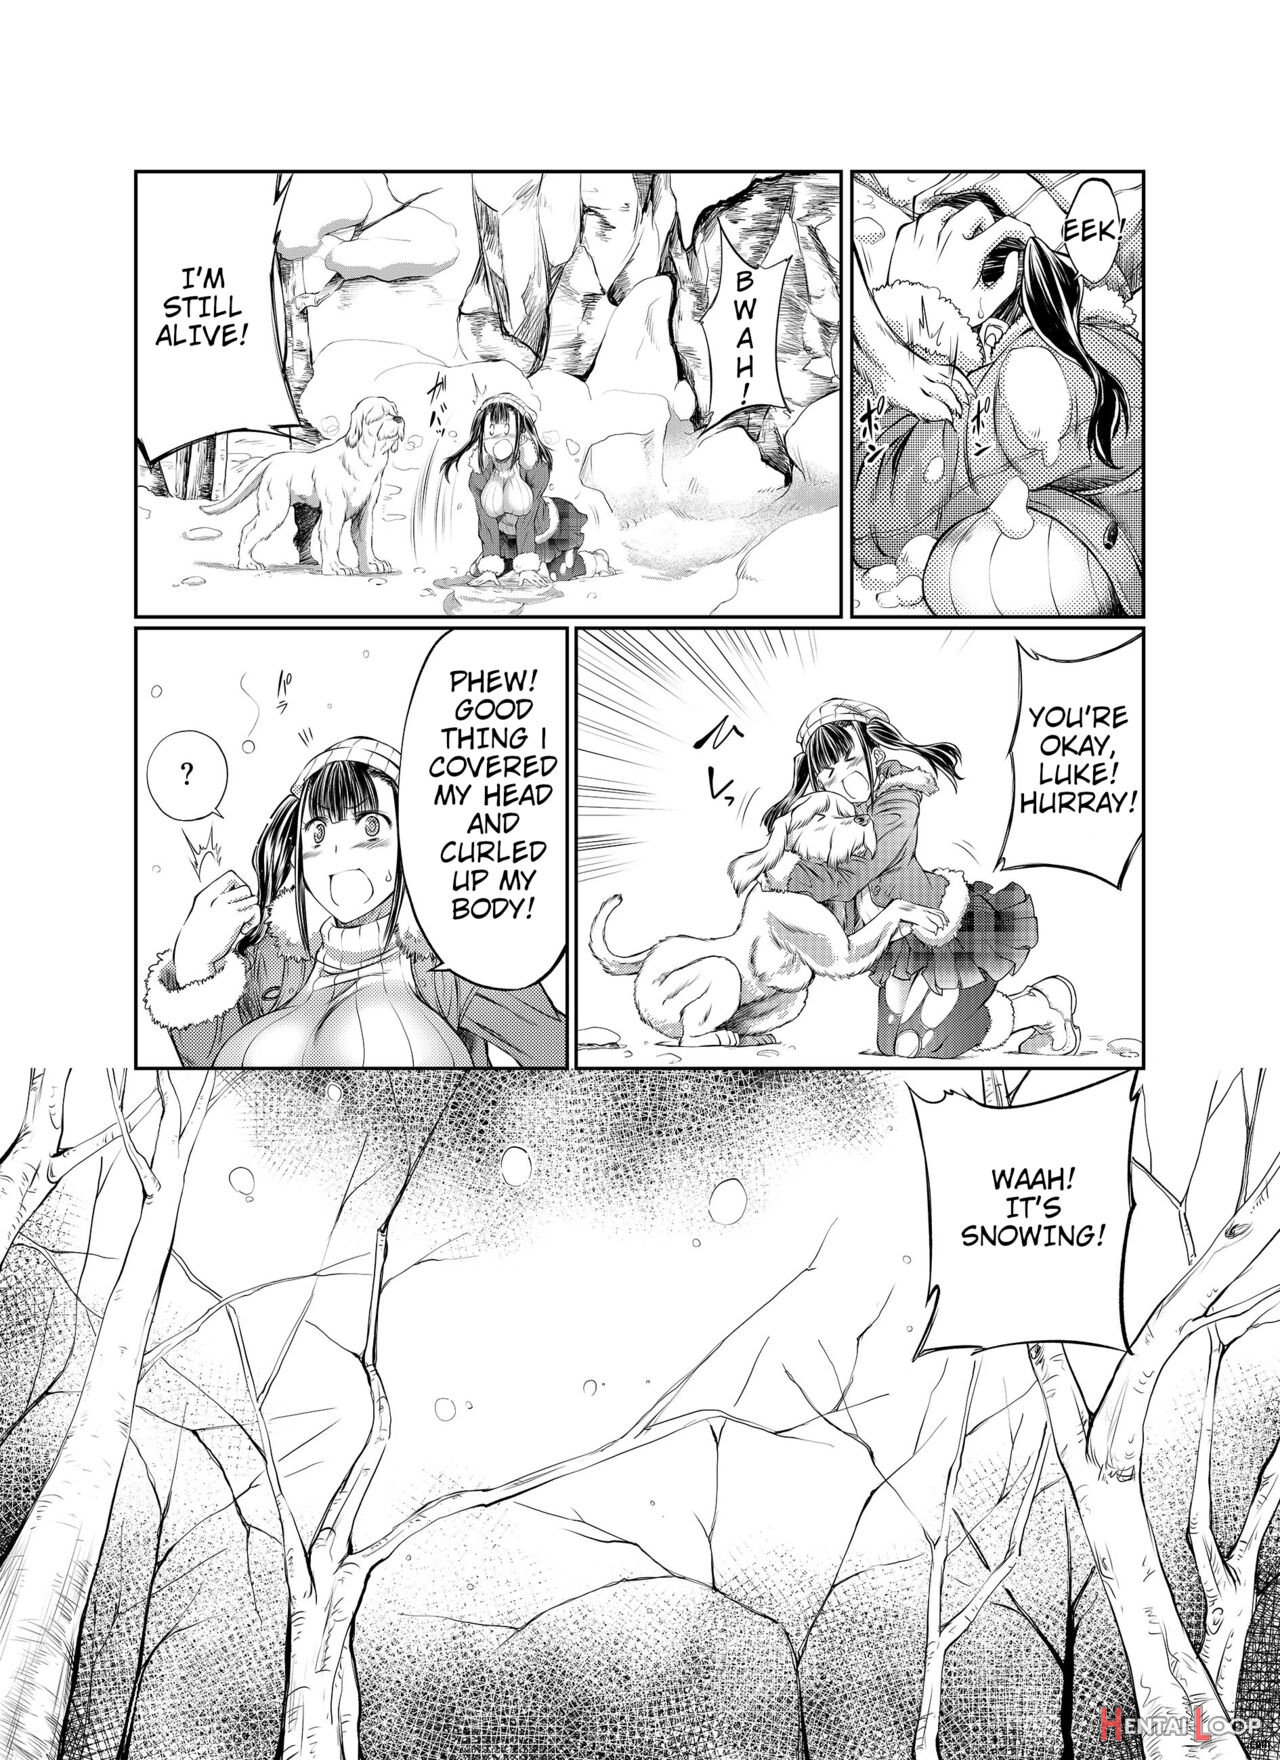 Kanbotsuyama Biwak page 5